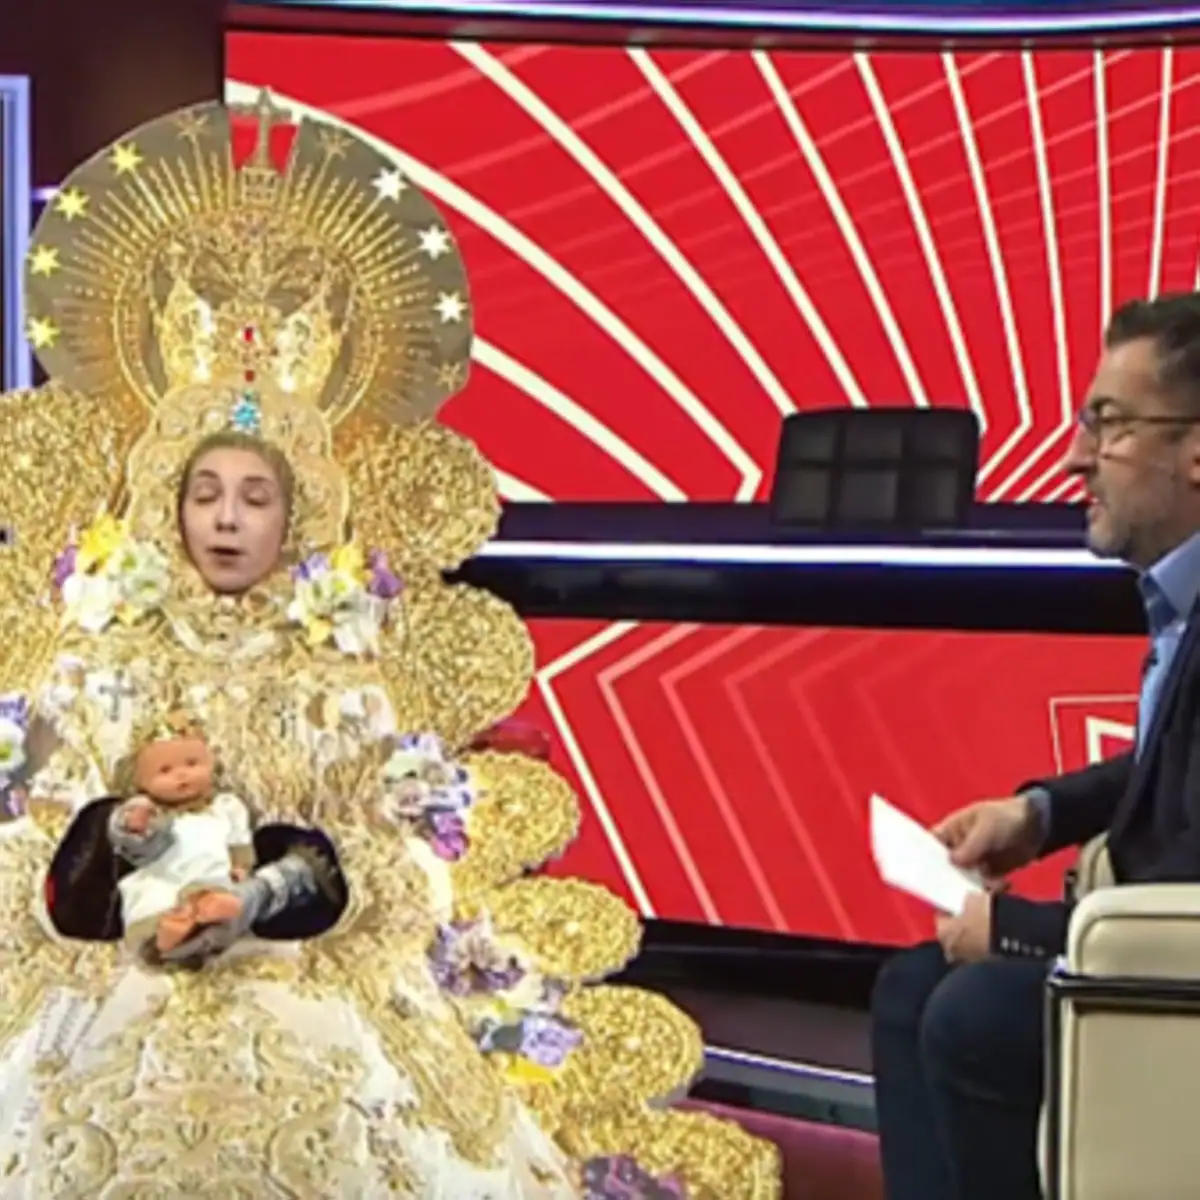 El humorista de TV3 que se mofó de la Virgen del Rocío ante la petición de disculpas: «Te puedes esperar sentado»